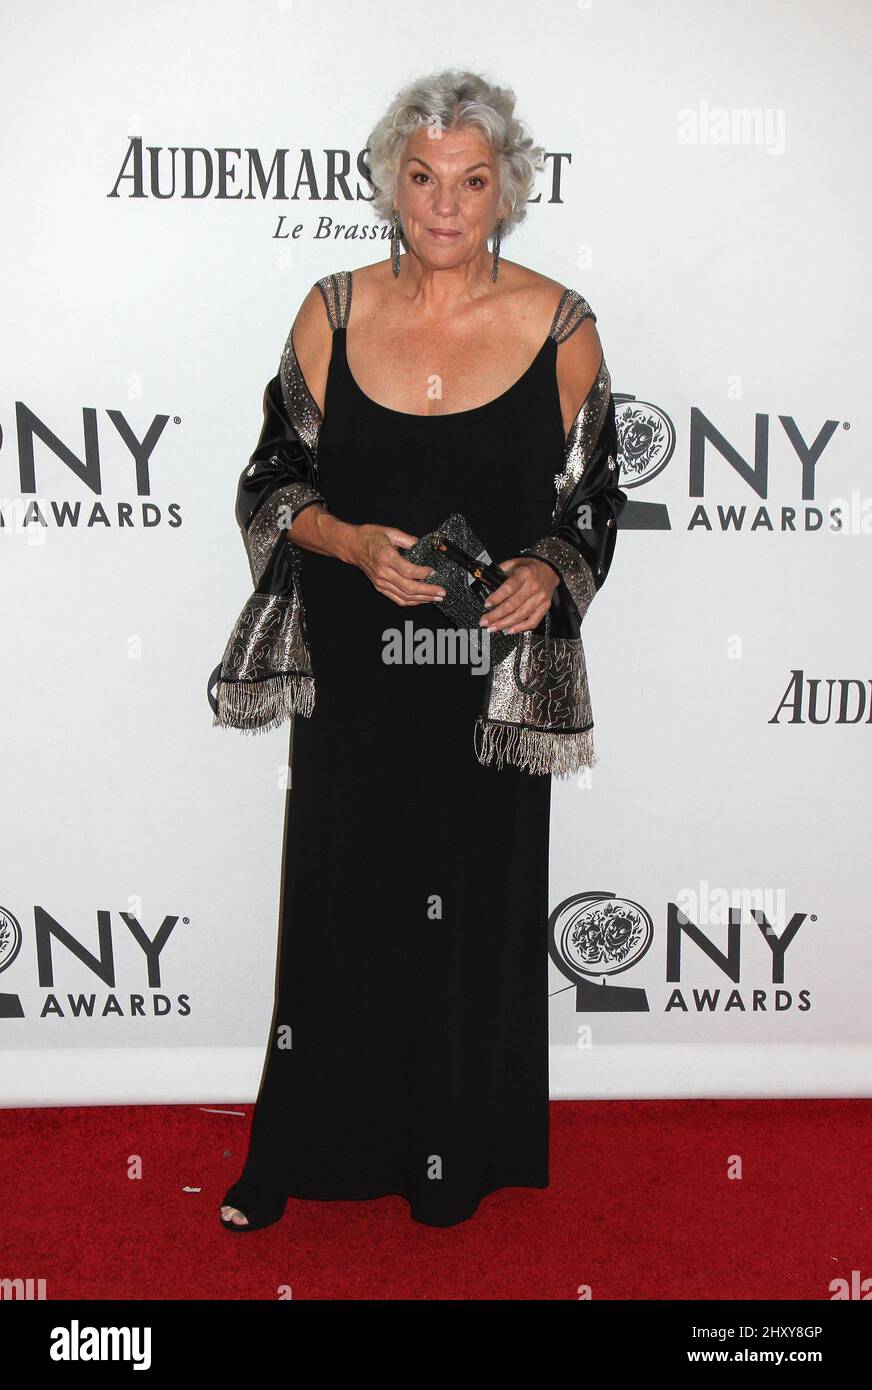 attends the 66th Annual Tony Awards held at The Beacon Theatre, New York City, NY. Stock Photo